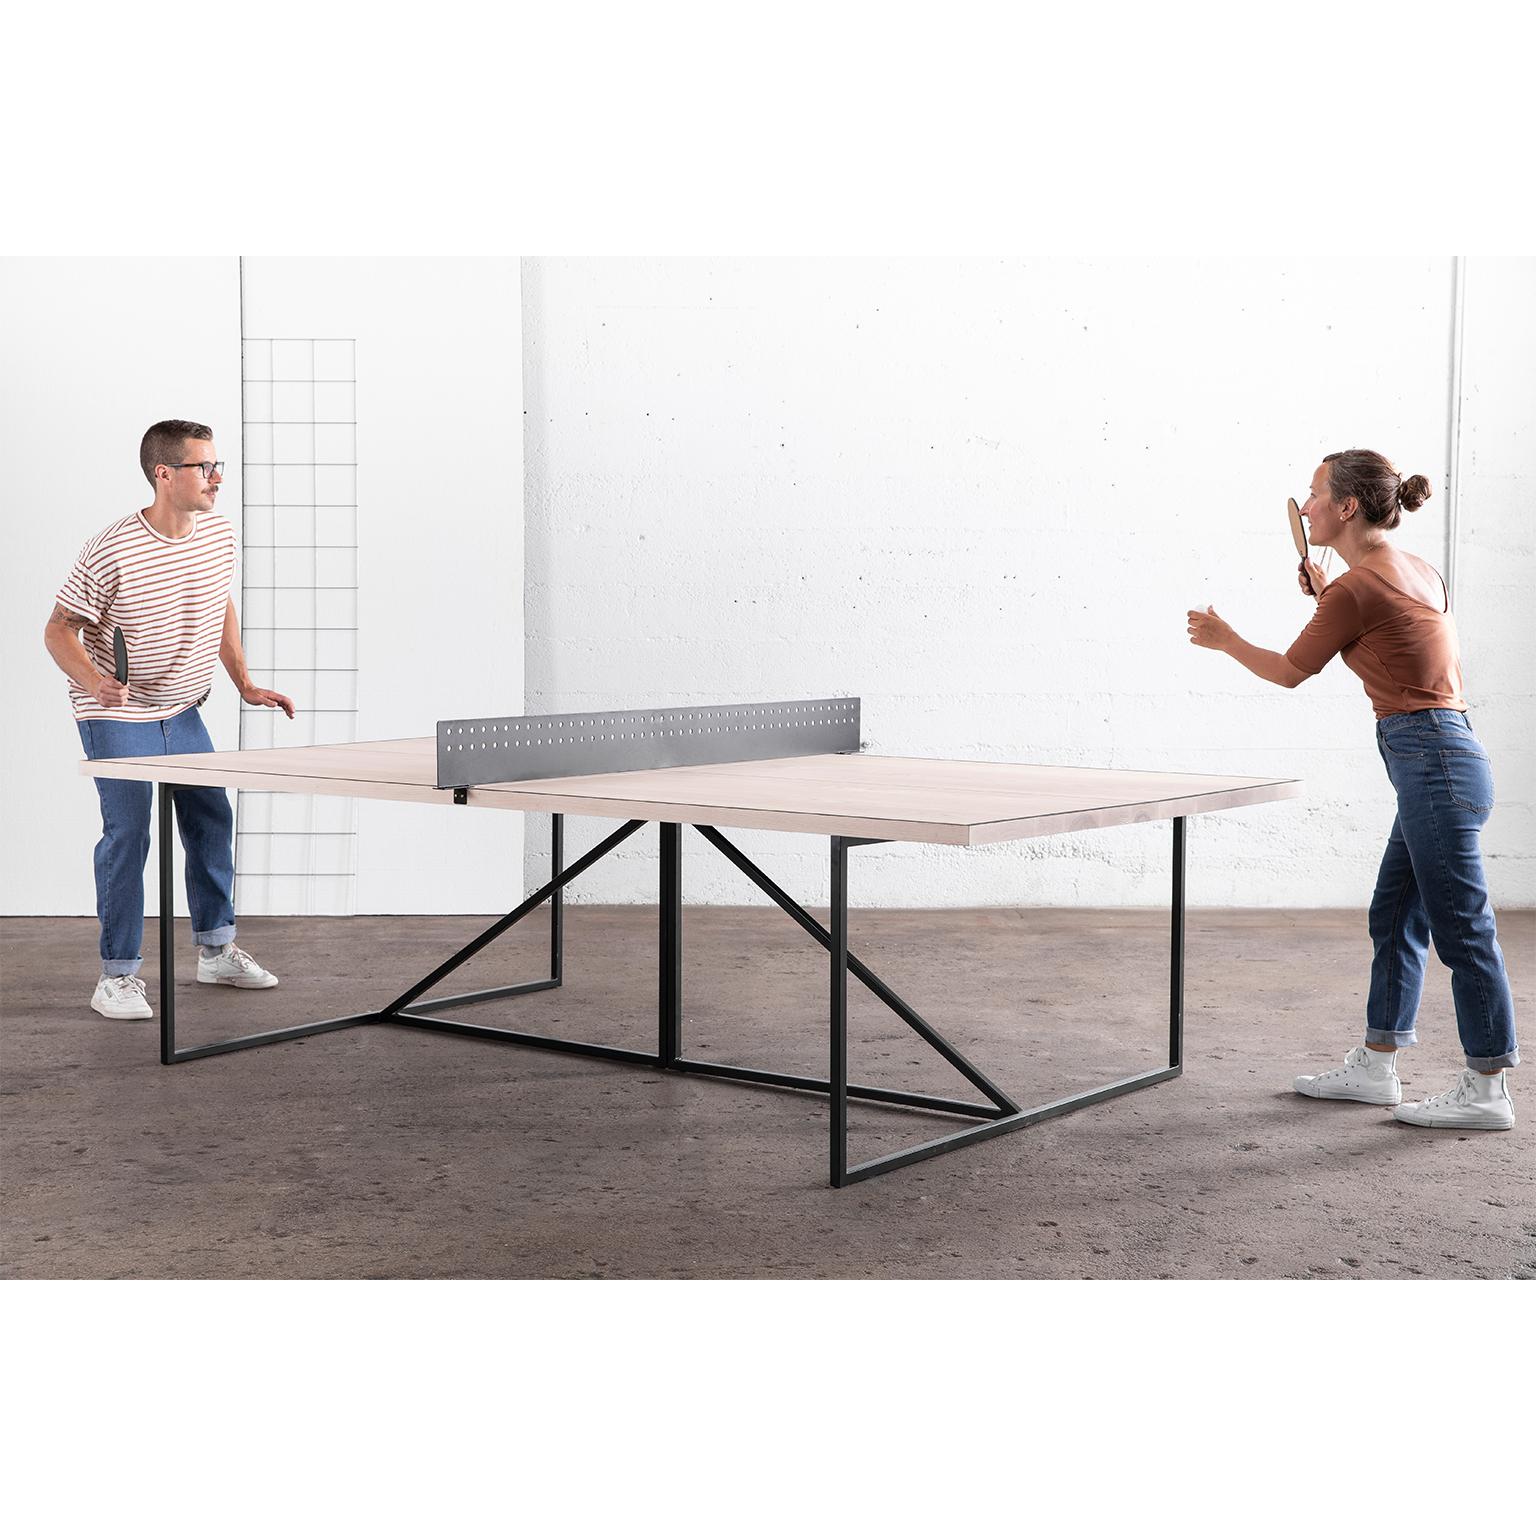 Der Break Ping Pong Table verleiht dem klassischen Gesellschaftsspiel einen modernen Look.

Das Gestell des Tisches ist aus langlebigem Stahl handgeschweißt und kann in einer unserer drei Metallvarianten ausgeführt werden. Der Tisch ist durch ein